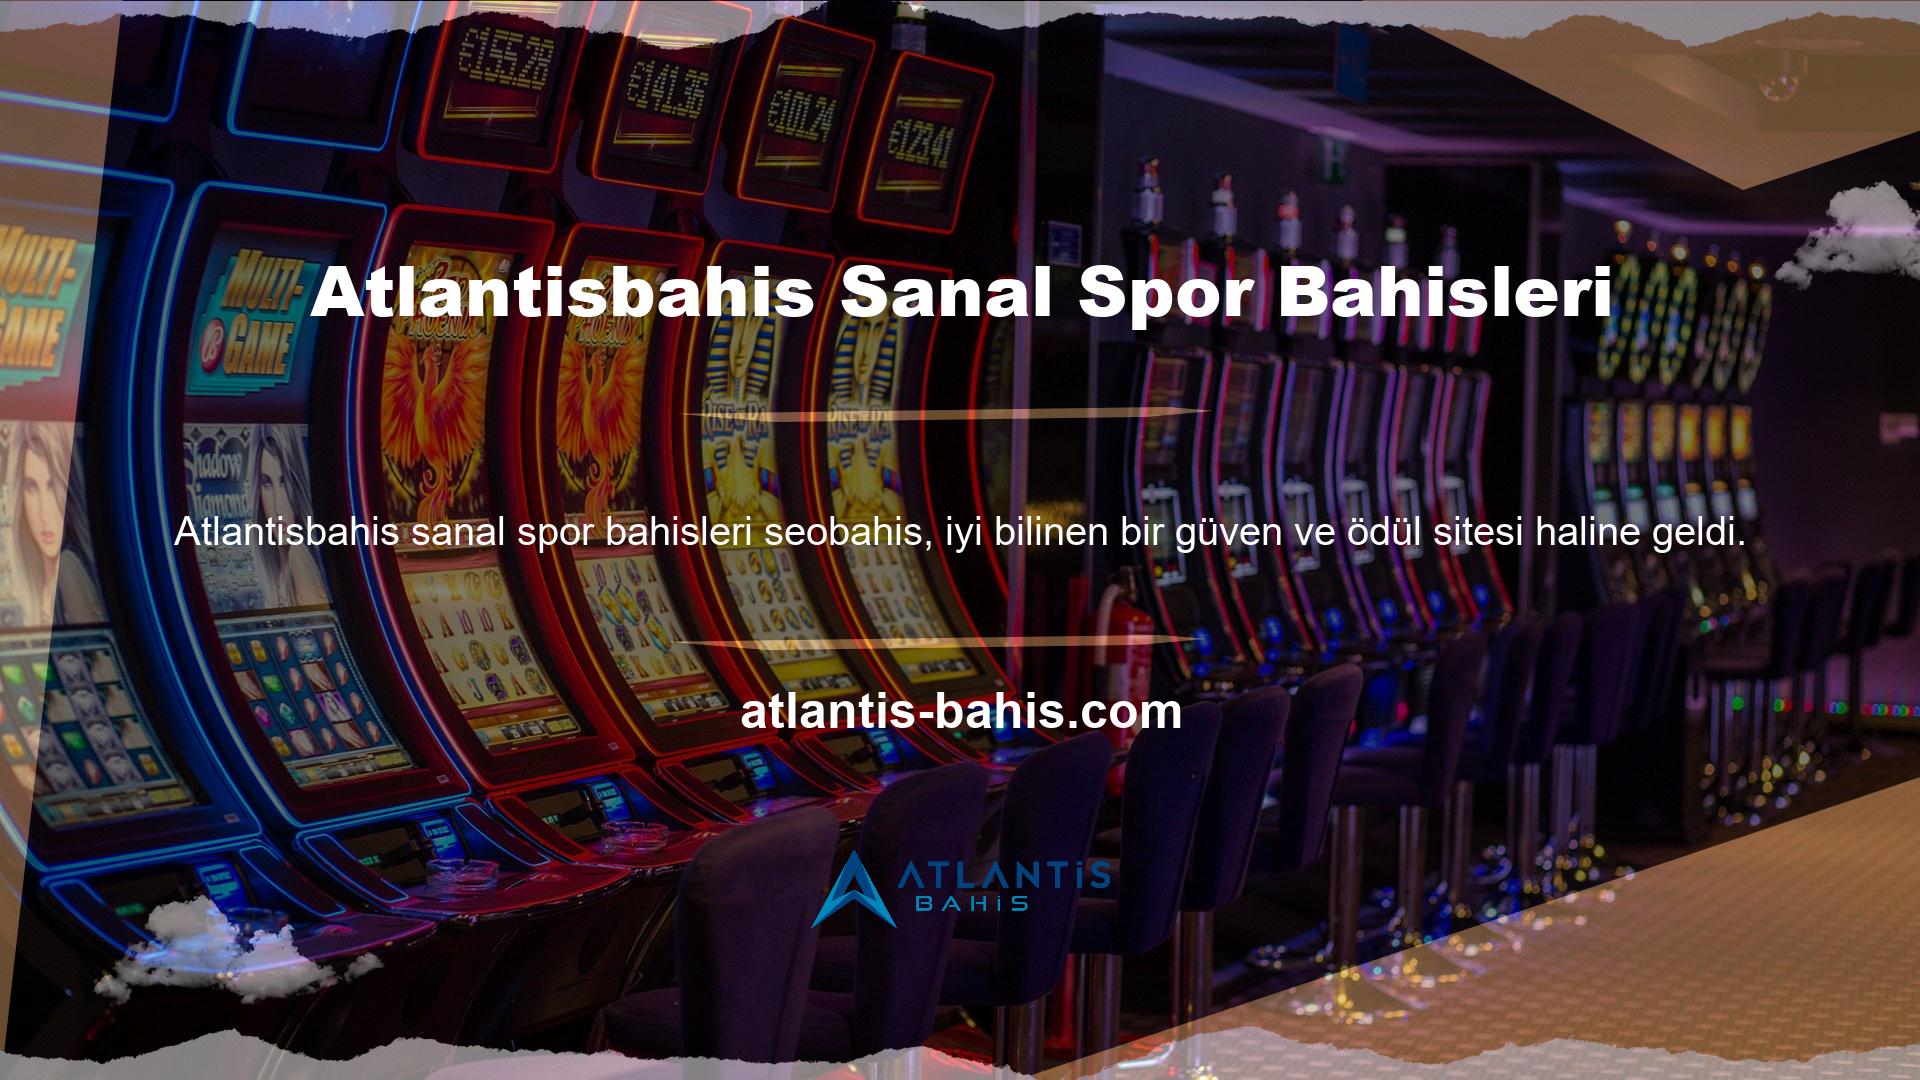 Çevrimiçi bir casino sanal bahis şirketi olan Atlantisbahis ve çok çeşitli bahis seçenekleri sunan Atlantisbahis web sitesi ile tanışın